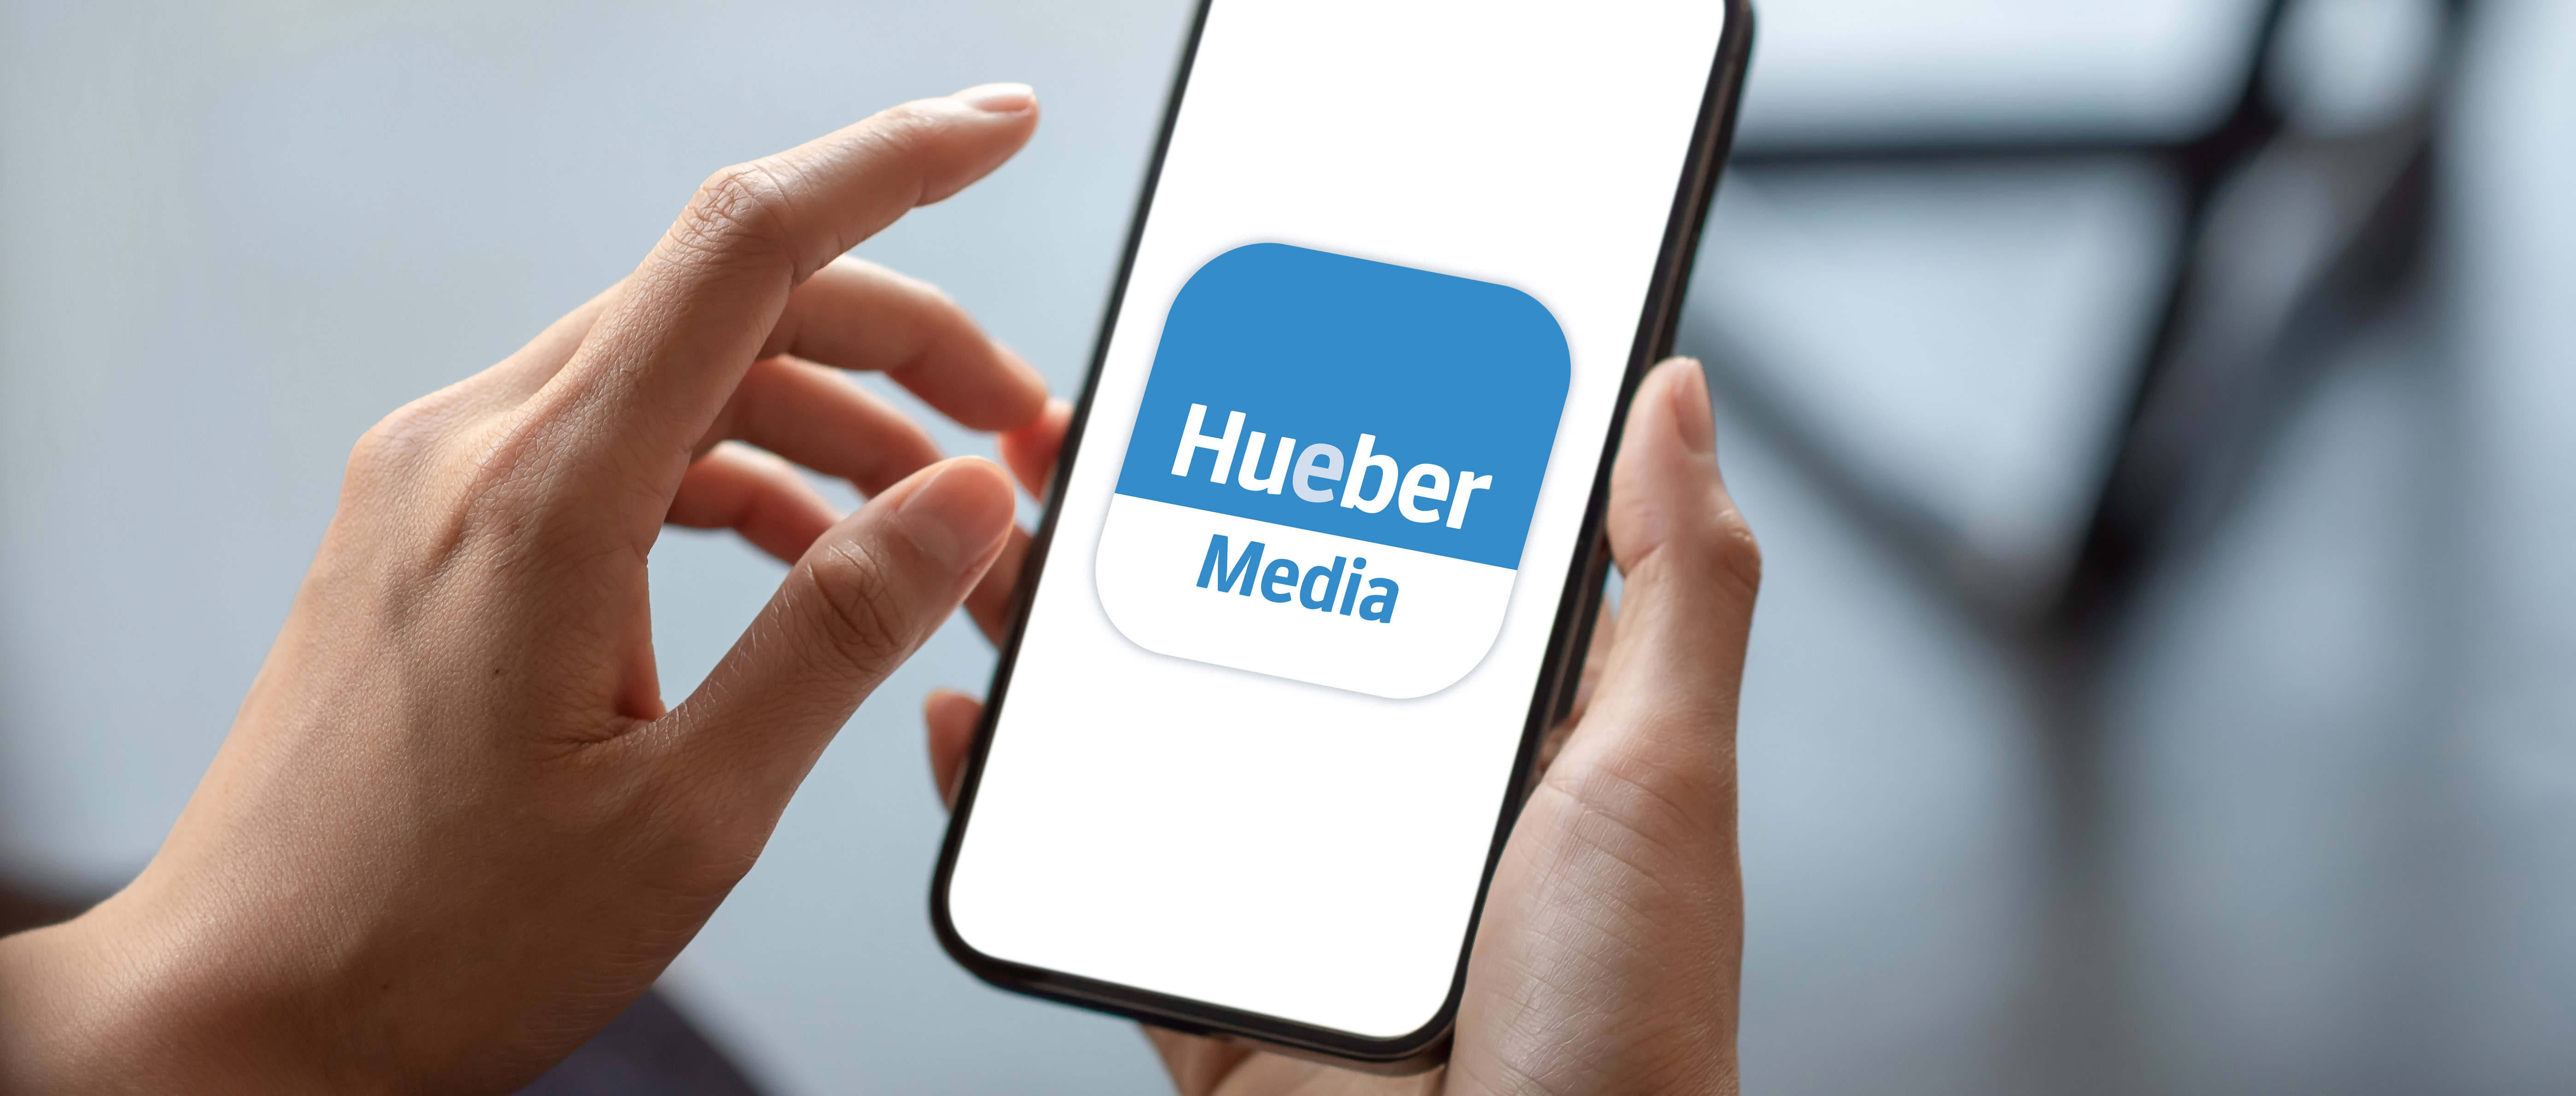 Zwei Hände halten ein Smartphone auf dem das blau-weiße Logo der Hueber Media App zu sehen ist.